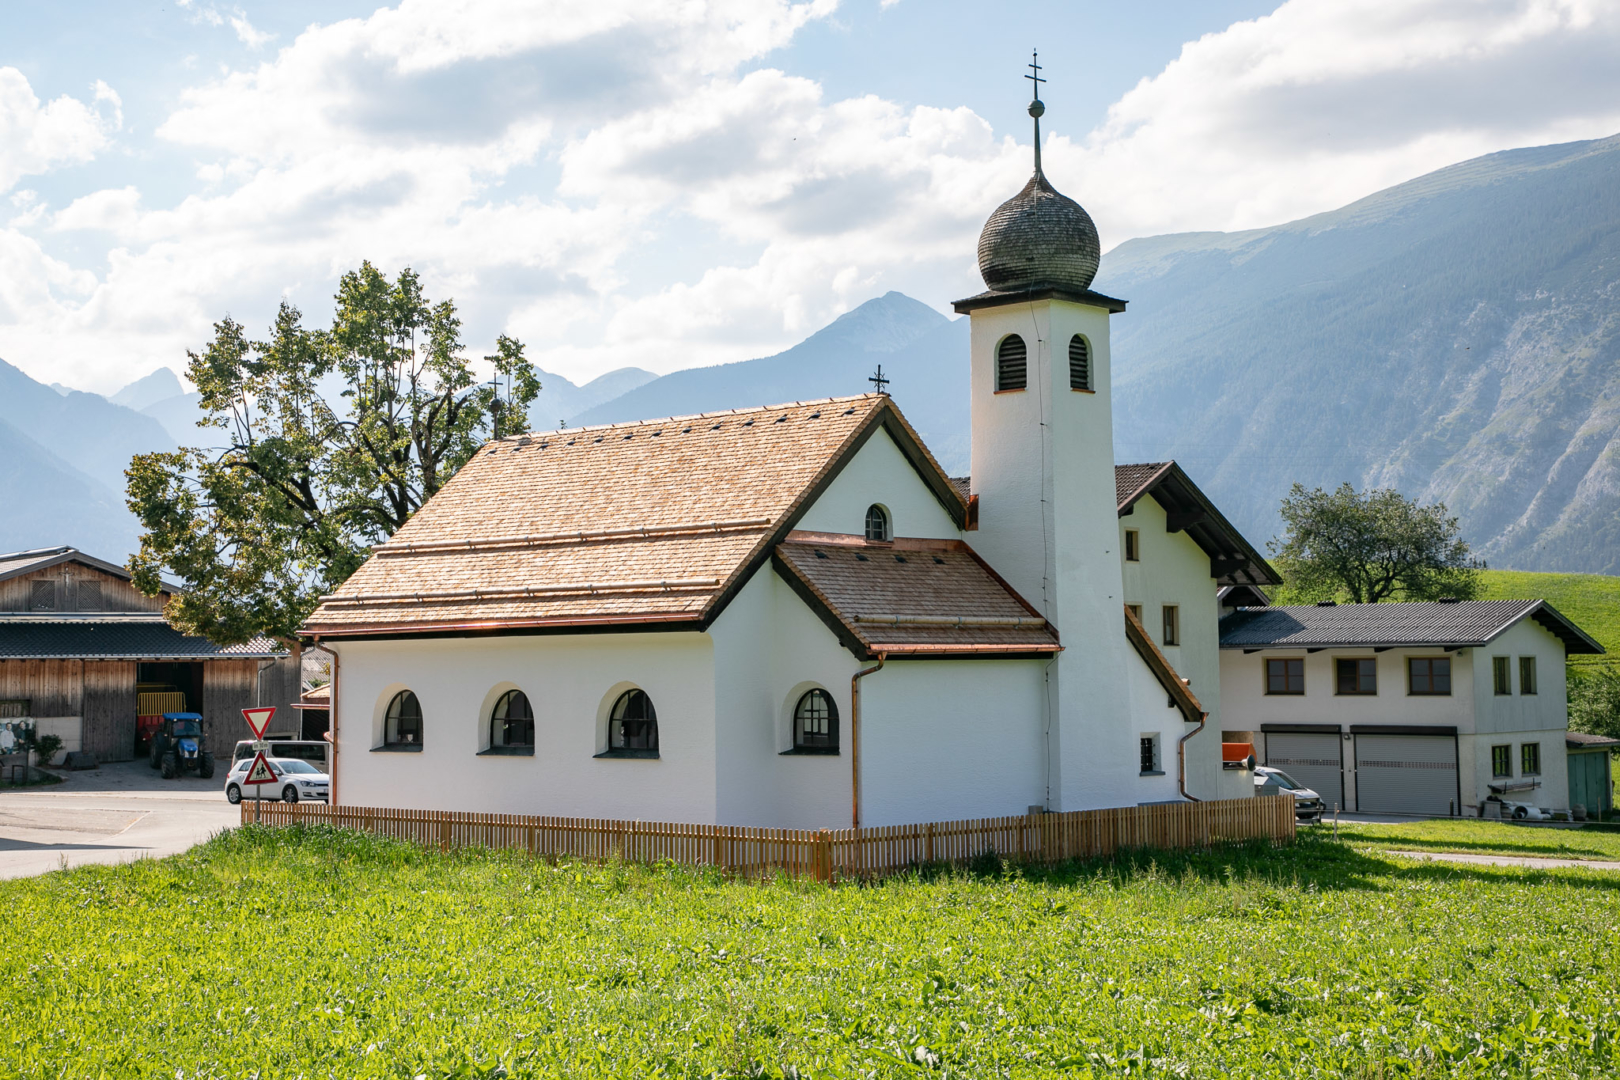 Holzschindeln von Holzbau Brunner auf der Kirche von Gallzein